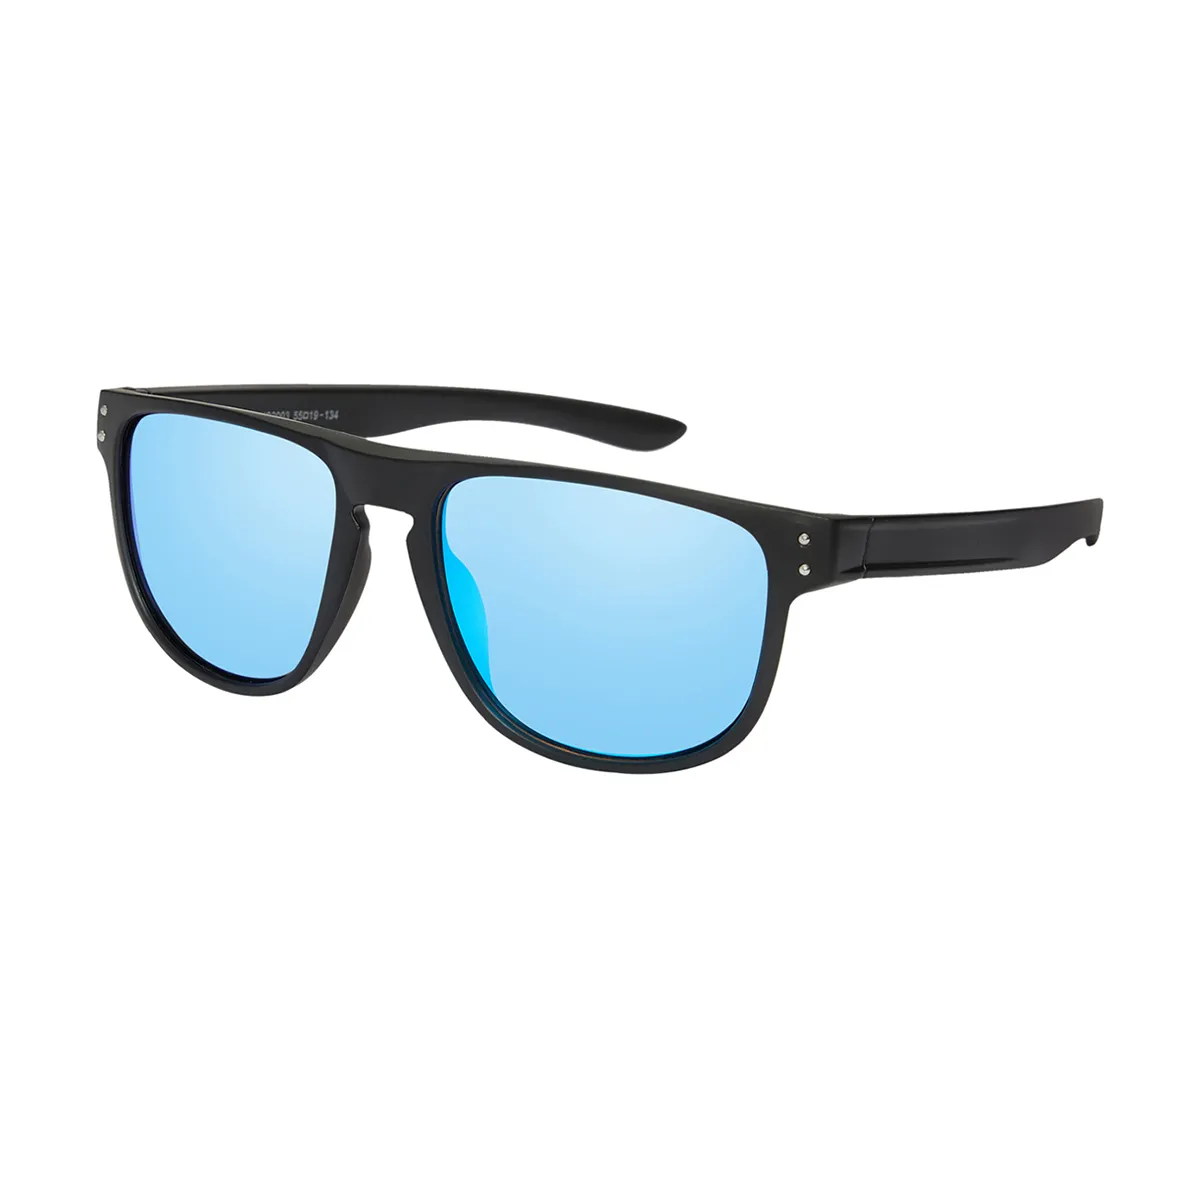 Elio - Square  Sunglasses for Men & Women